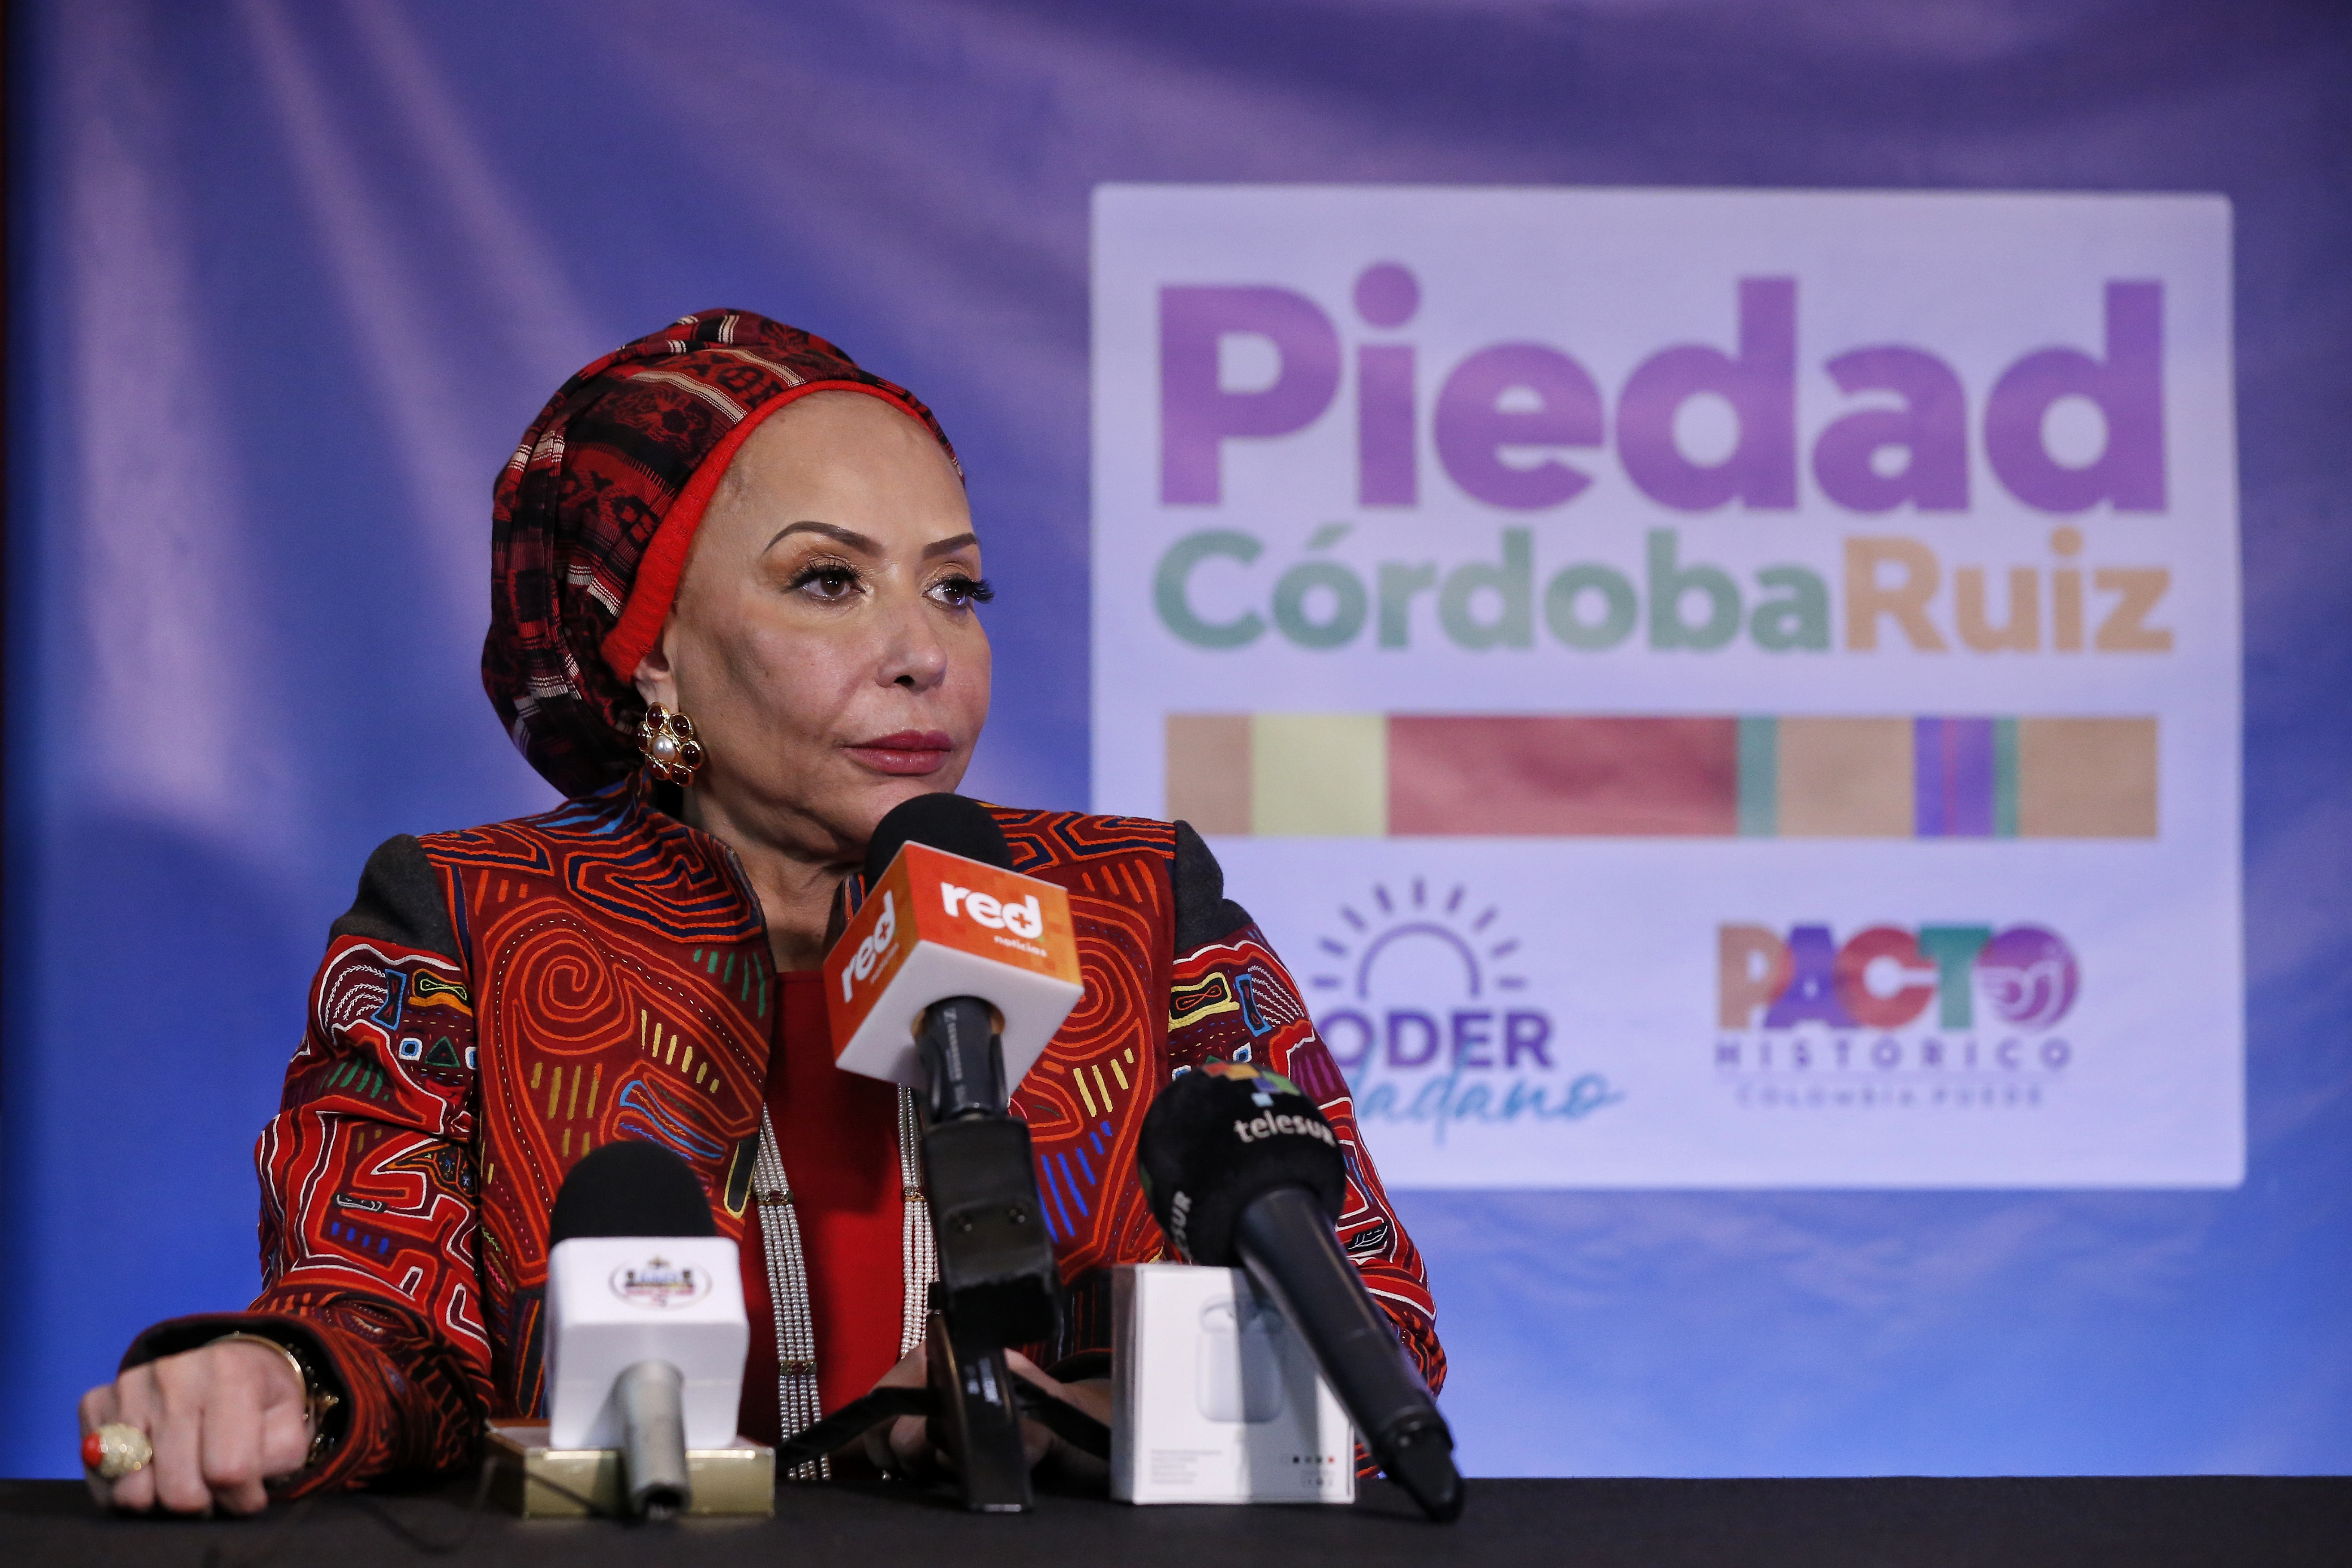 La exsenadora Piedad Córdoba (foto) y su movimiento Poder Ciudadano se suman al Pacto Histórico del precandidato presidencial Gustavo Petro. (Colprensa - Camila Díaz)